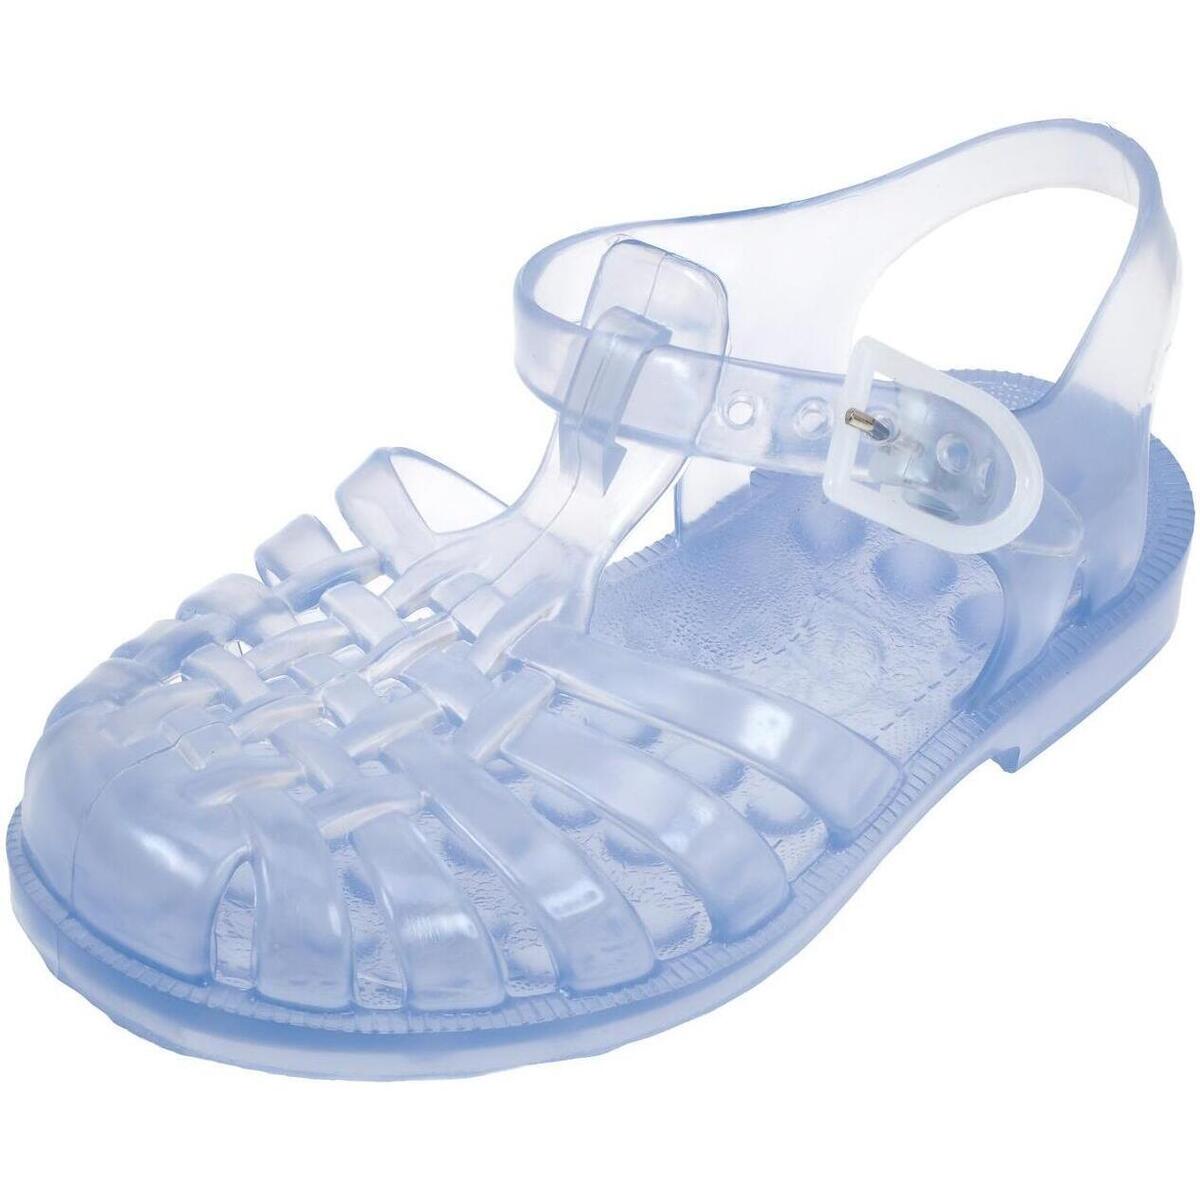 Chaussures Garçon Votre adresse doit contenir un minimum de 5 caractères Sun cristal enfant Argenté